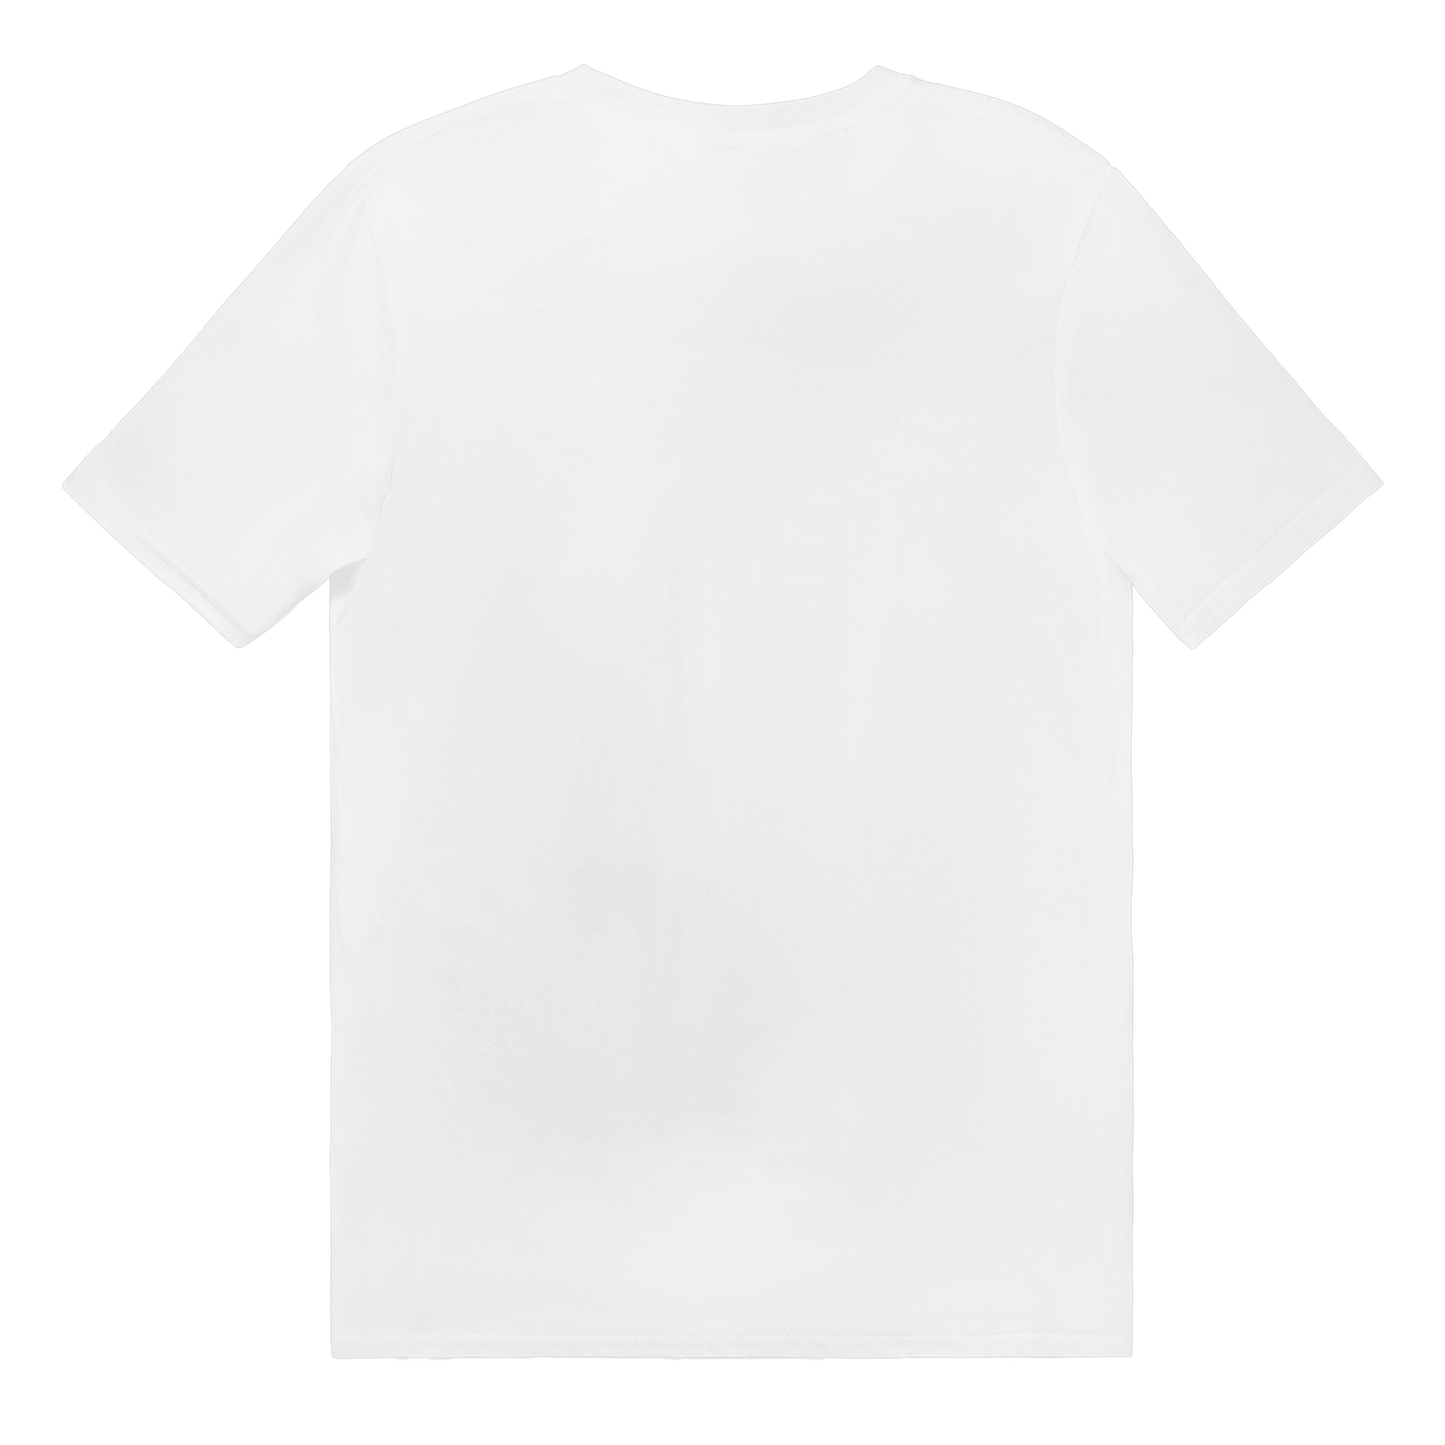 Vörtbröd - T-shirt 